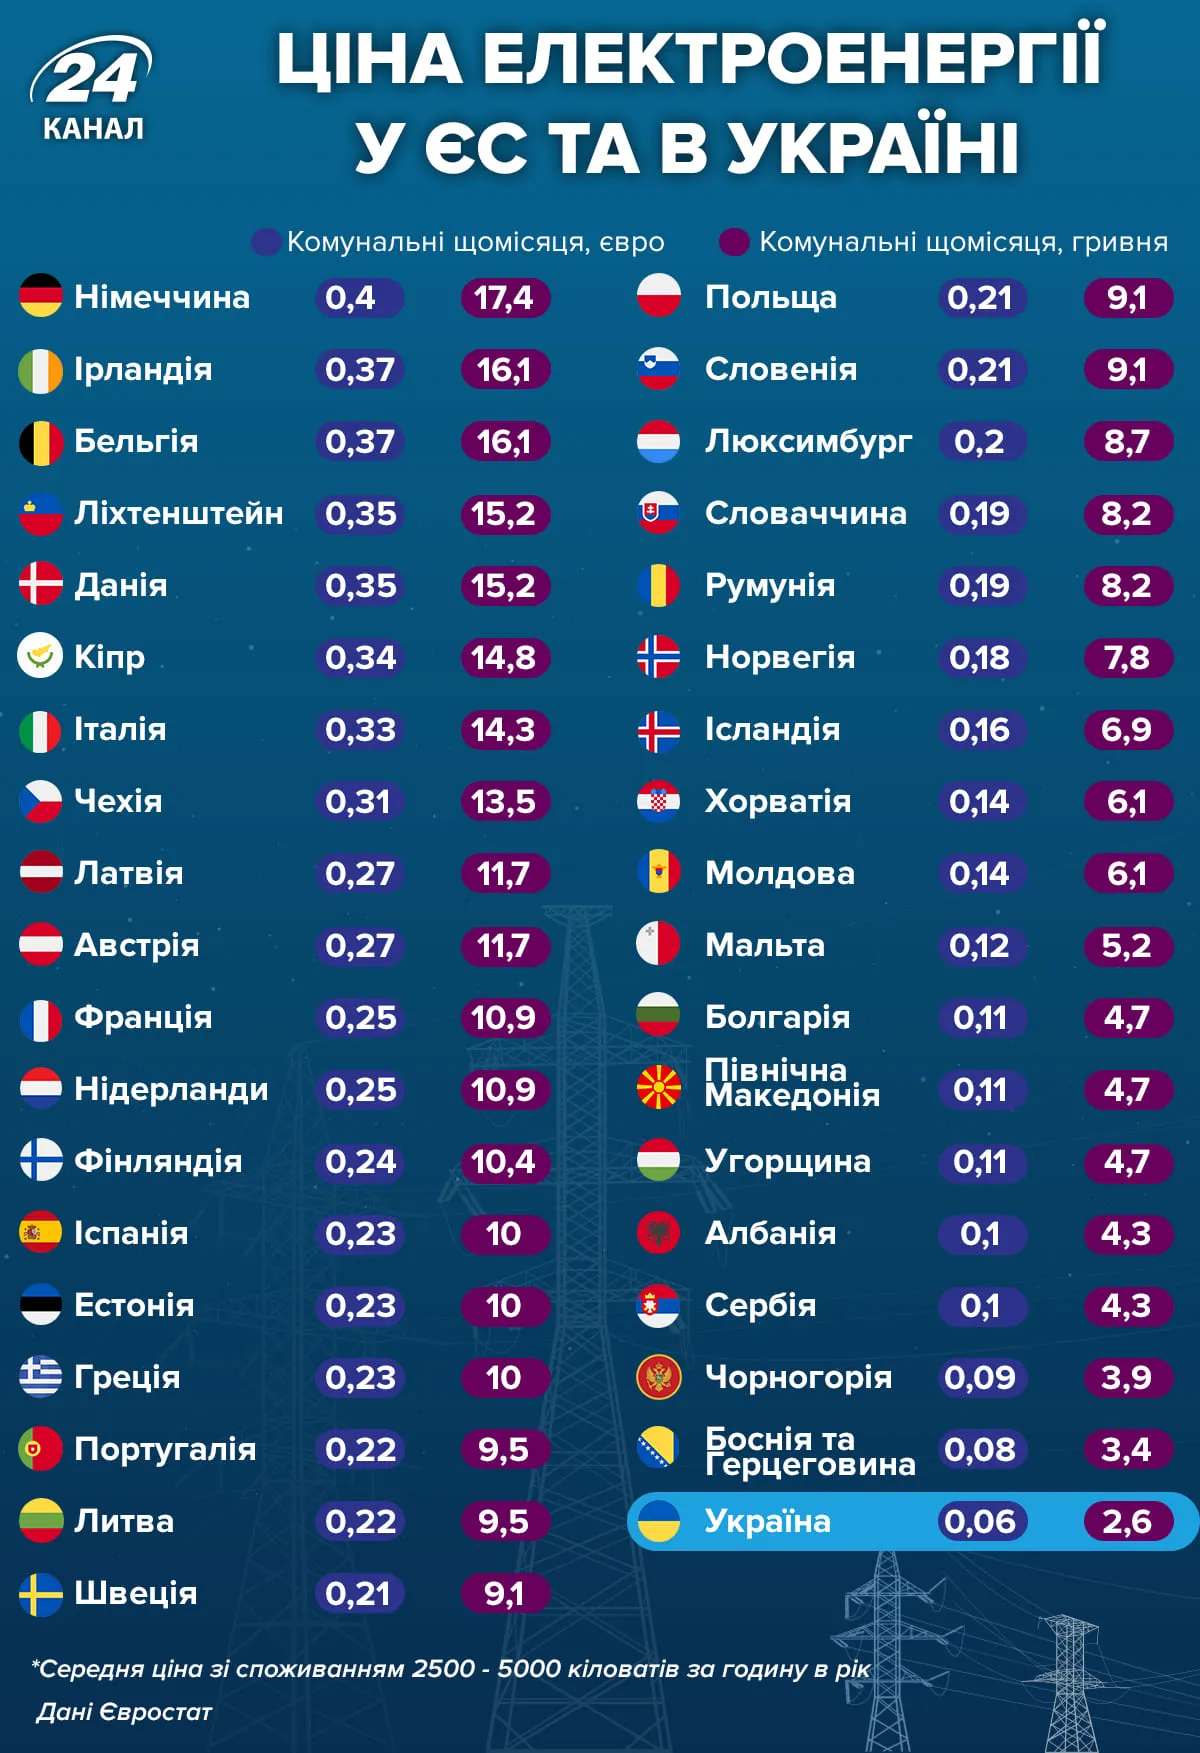 Цена электроэнергии в ЕС и Украине 